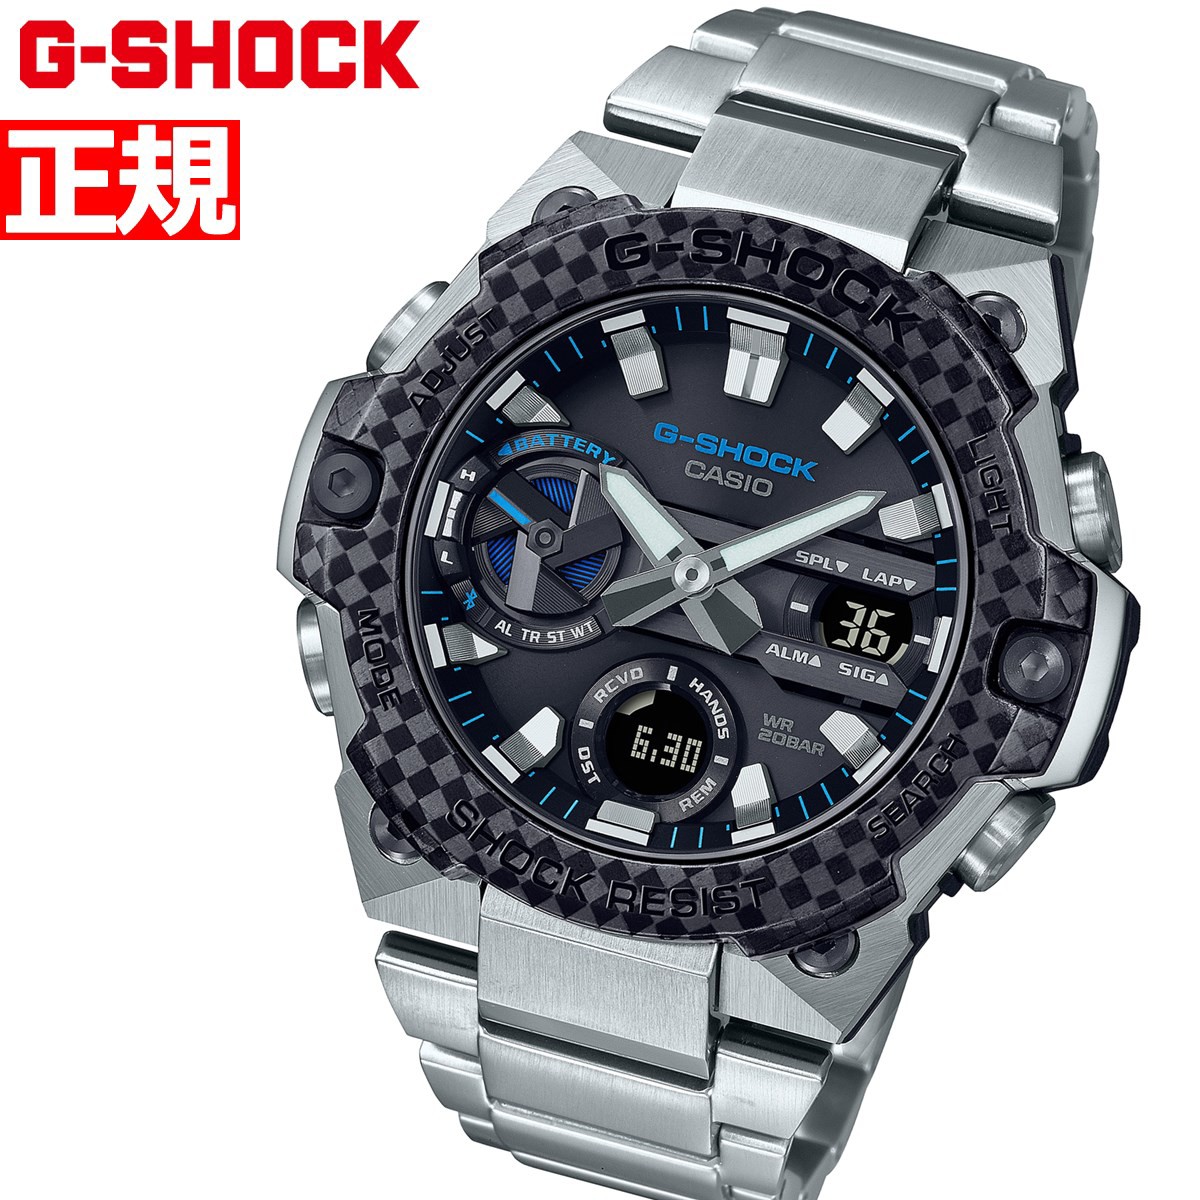 G-SHOCK ソーラー G-STEEL カシオ Gショック Gスチール CASIO 腕時計 メンズ タフソーラー GST-B400XD-1A2JF